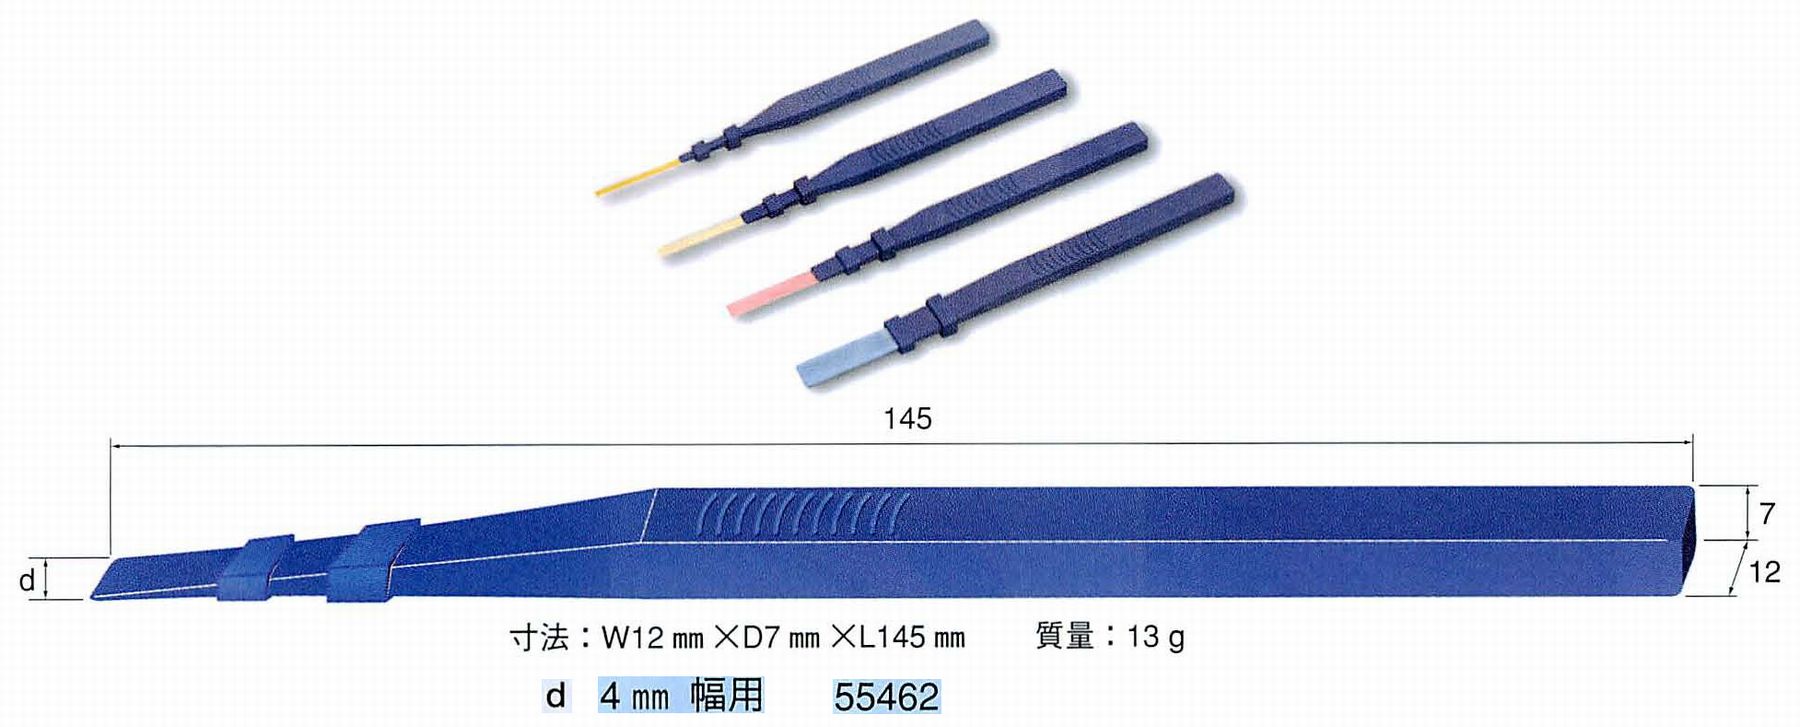 ナカニシ/NAKANISHI セラファイバー 専用ハンドホルダ 4mm幅用 55462